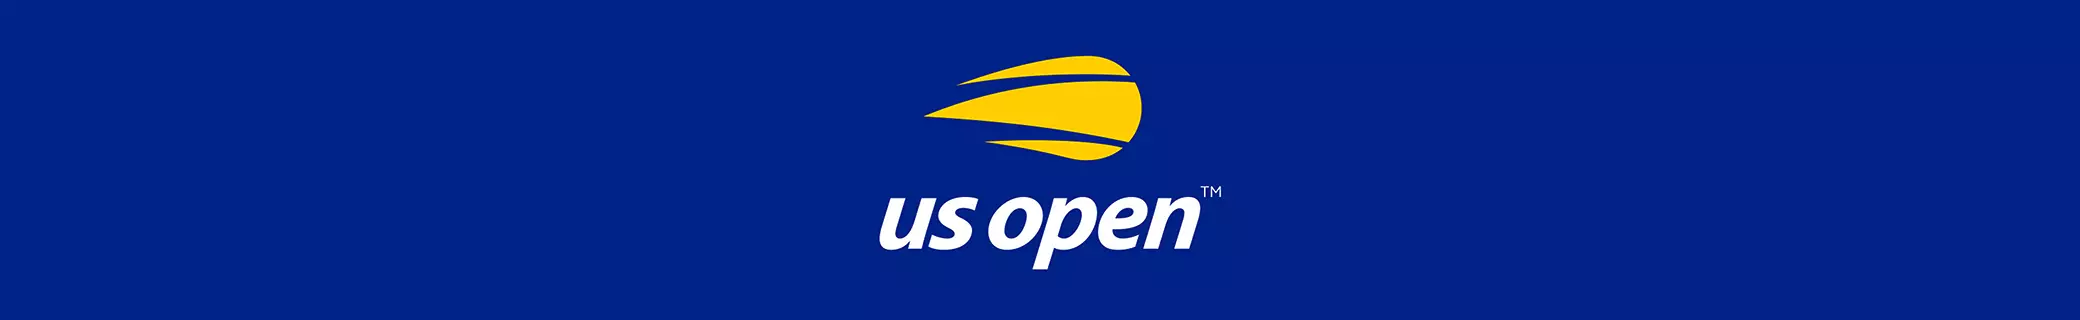 US Open banner